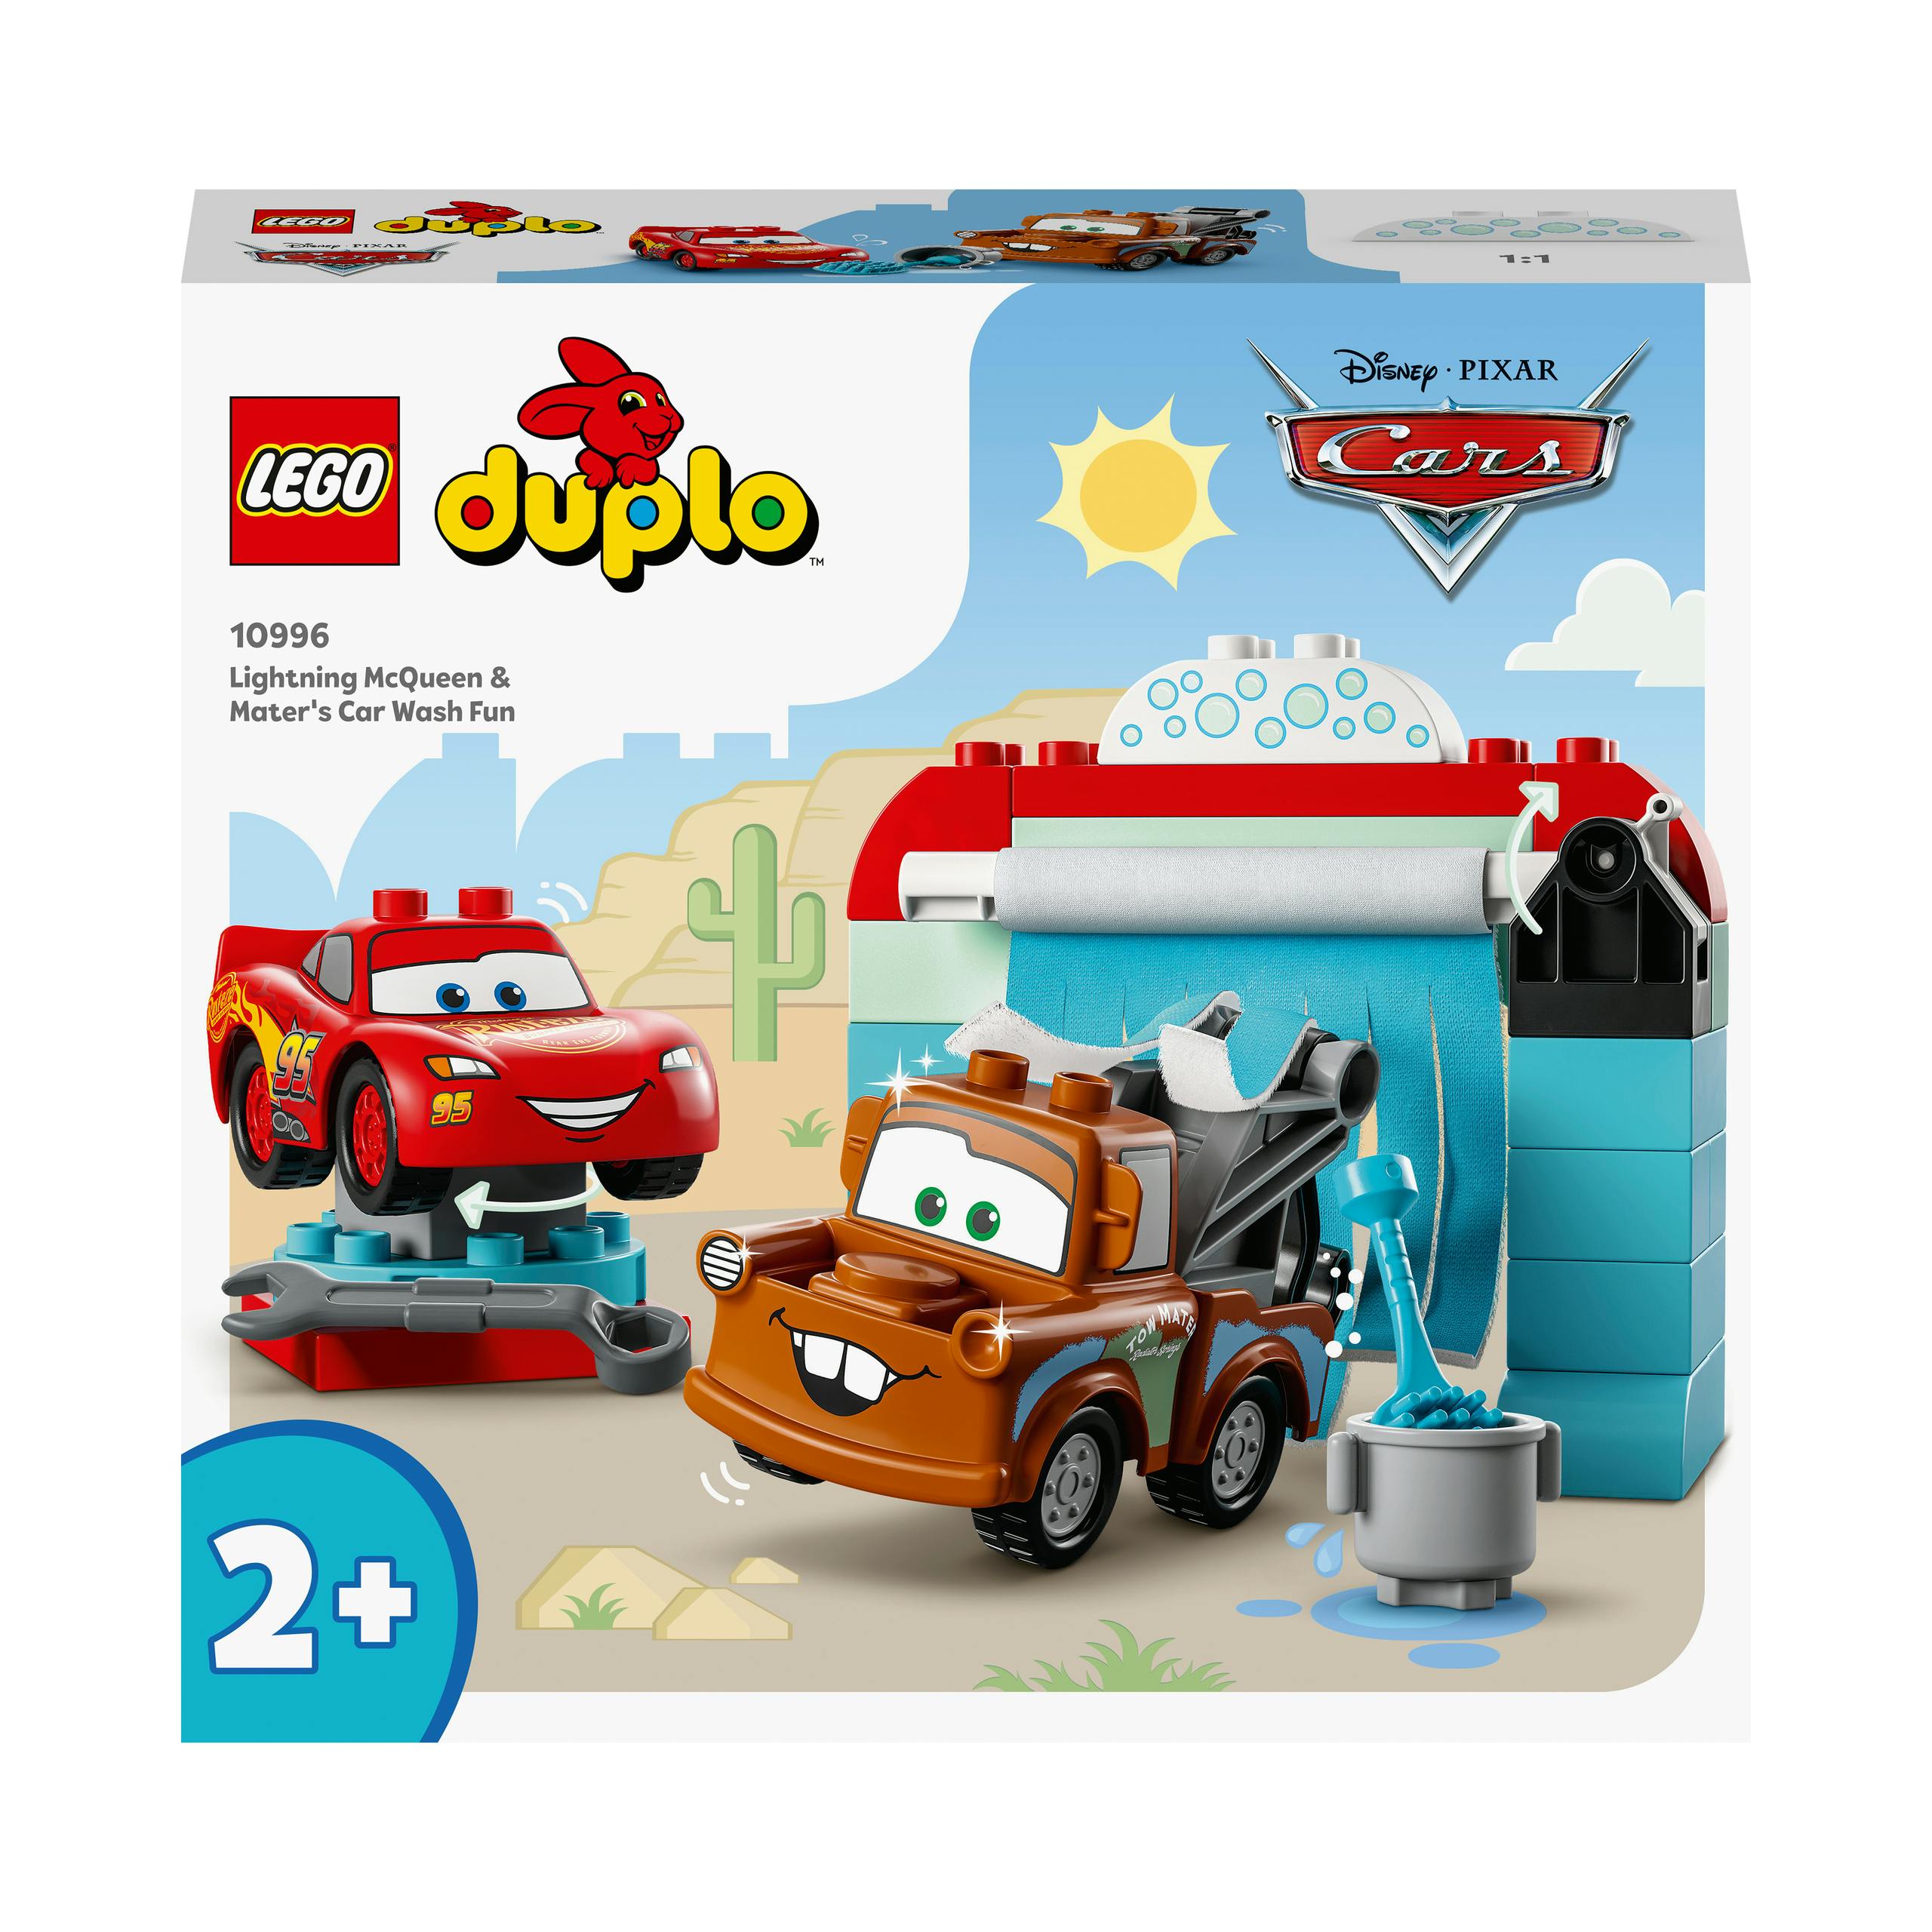 LEGO DUPLO Disney En Pixar's Cars Bliksem Mcqueen & Takel Wasstraatpret (10996)